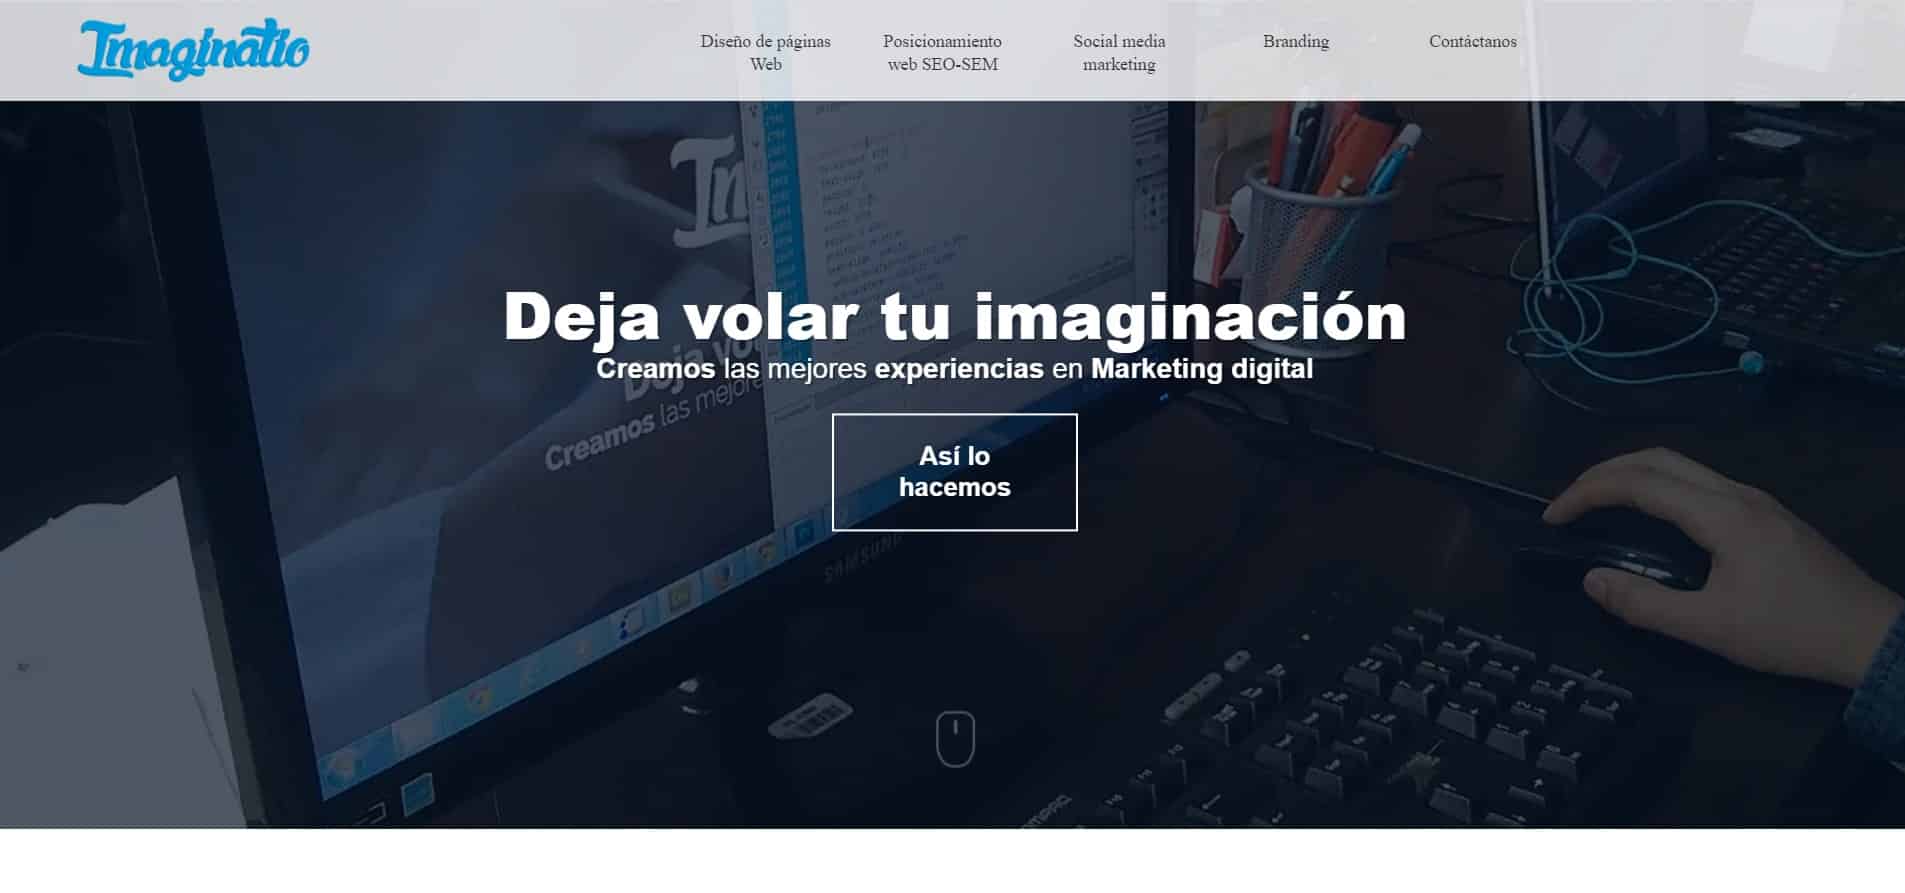 agencia de marketing en colombia Imaginatio